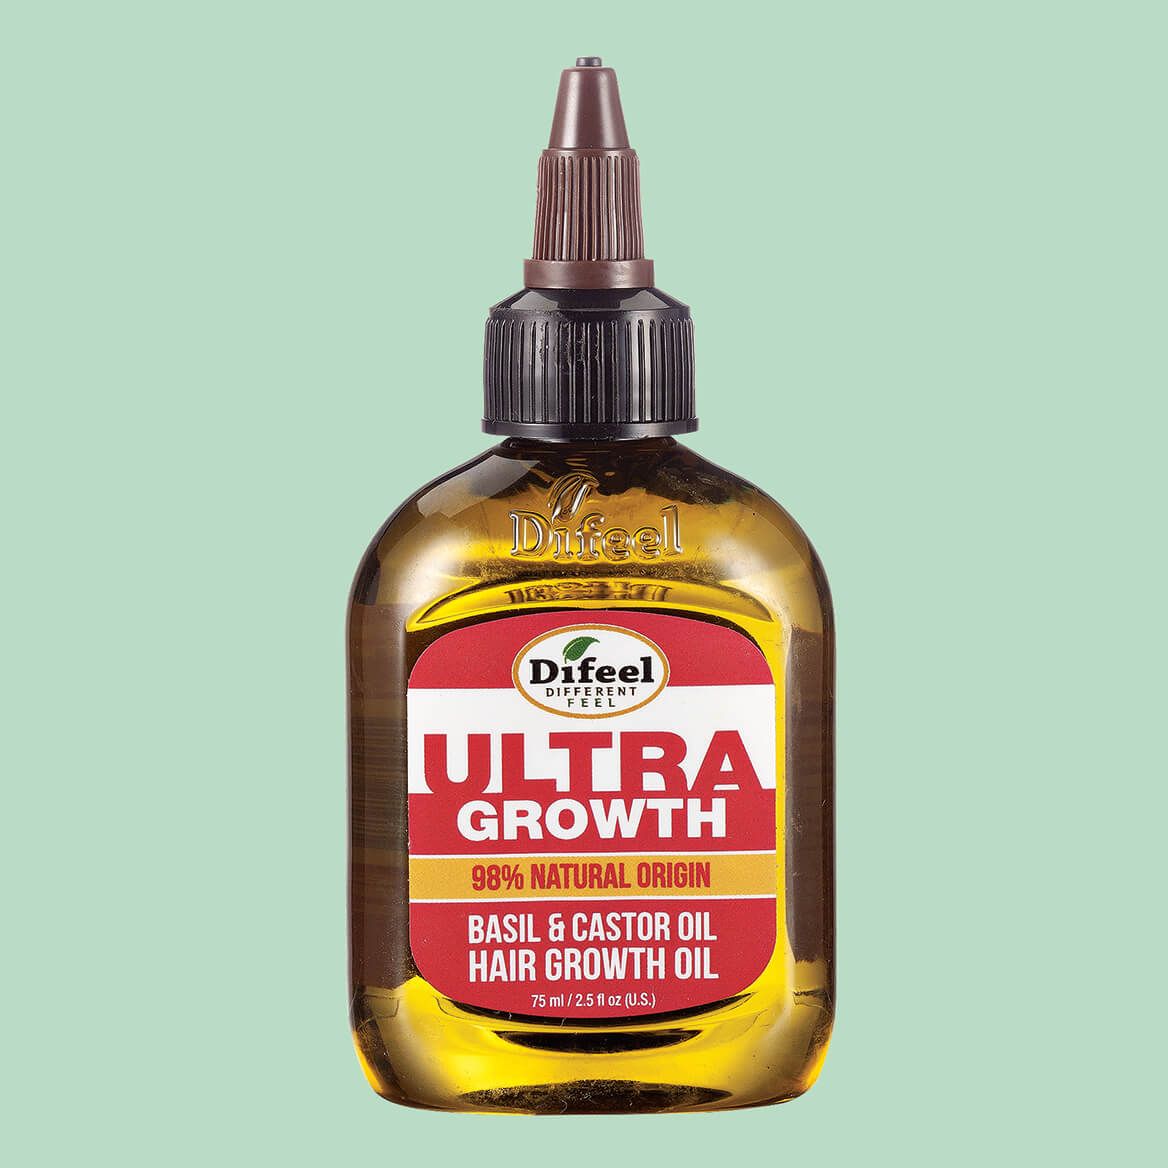 Ultra Growth Basil and Castor Oil Hair Growth Oil + '-' + 368308